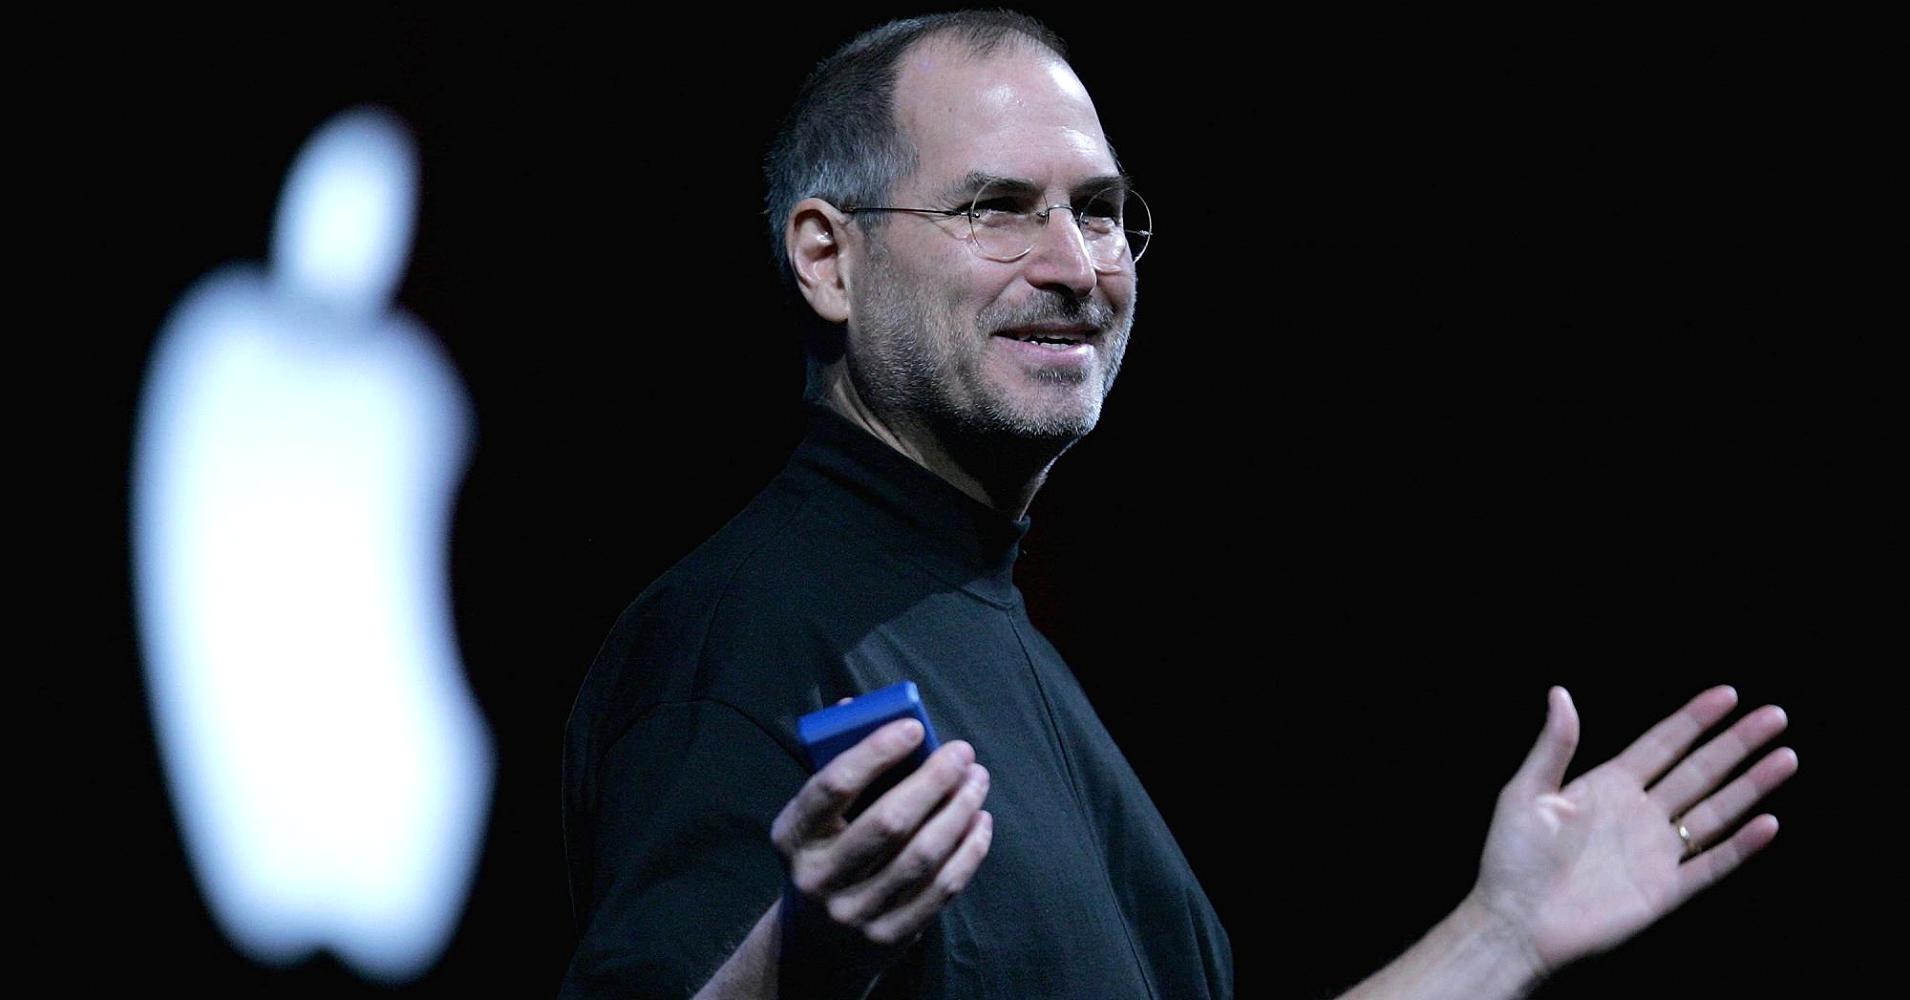 Steve Jobs adlı İtalyan şirketi